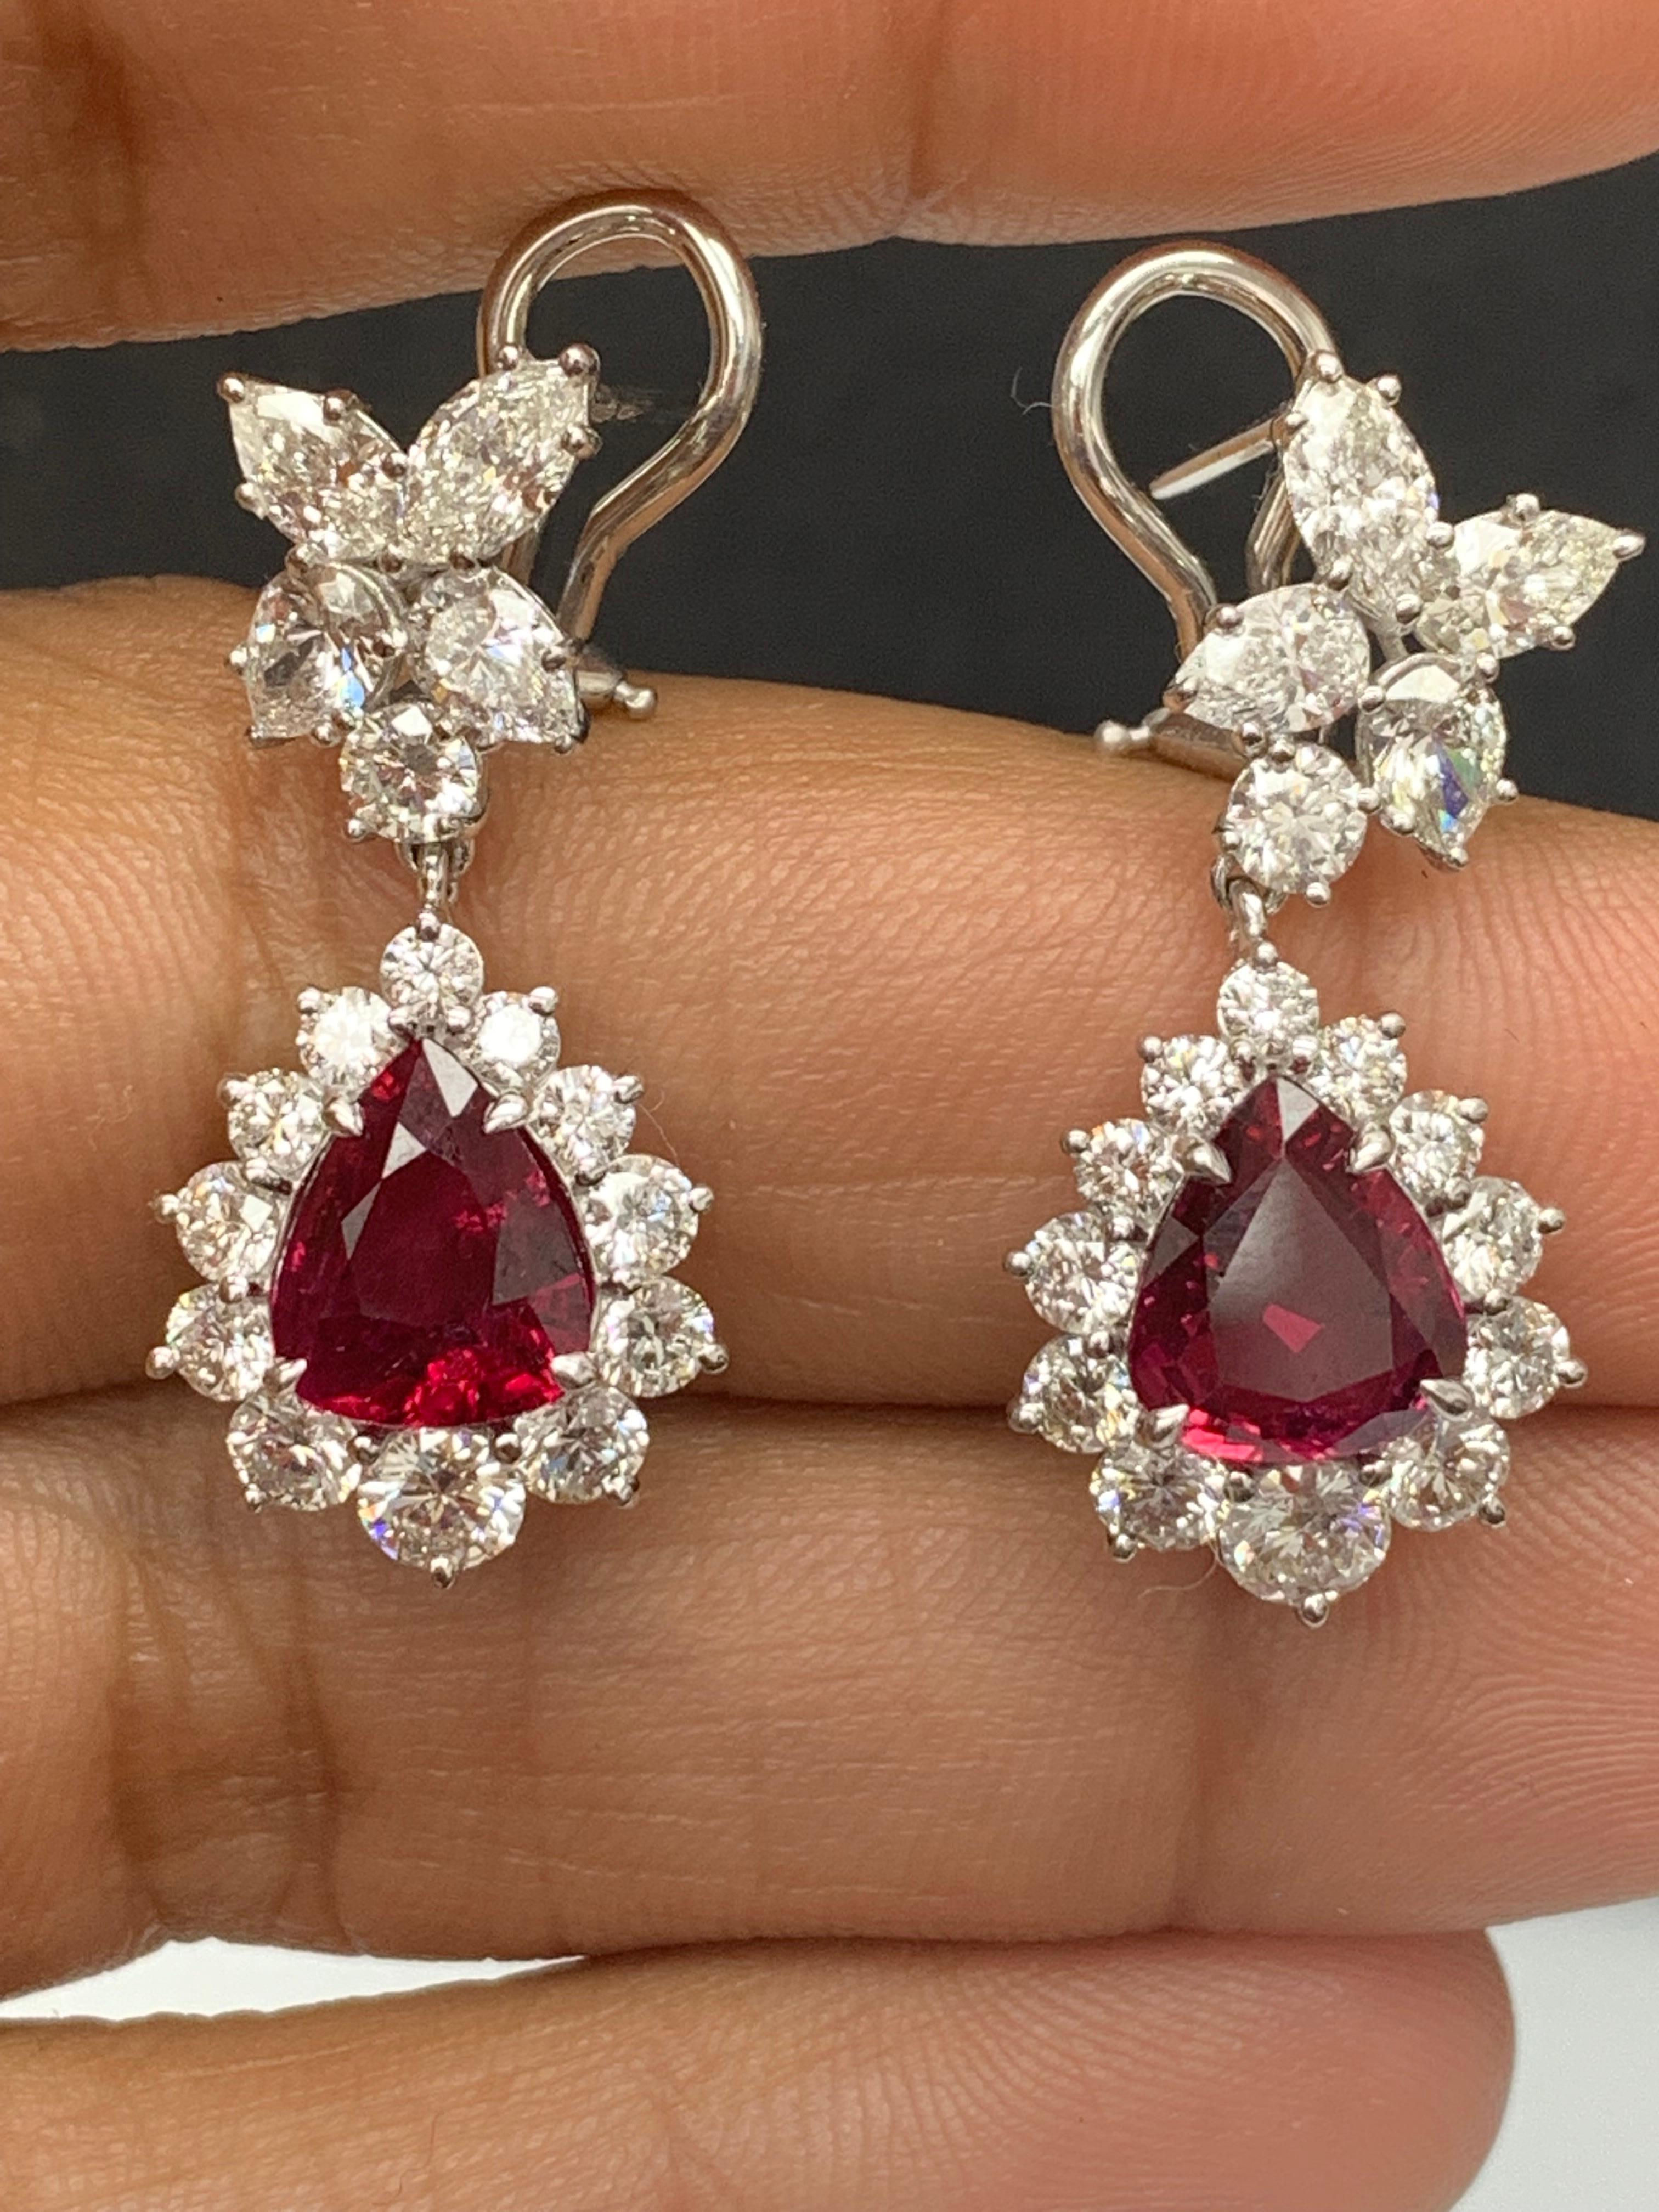 Certified 4.02 Carat Pear Shape Rubies & Diamond Drop Earrings in 18K White Gold For Sale 3